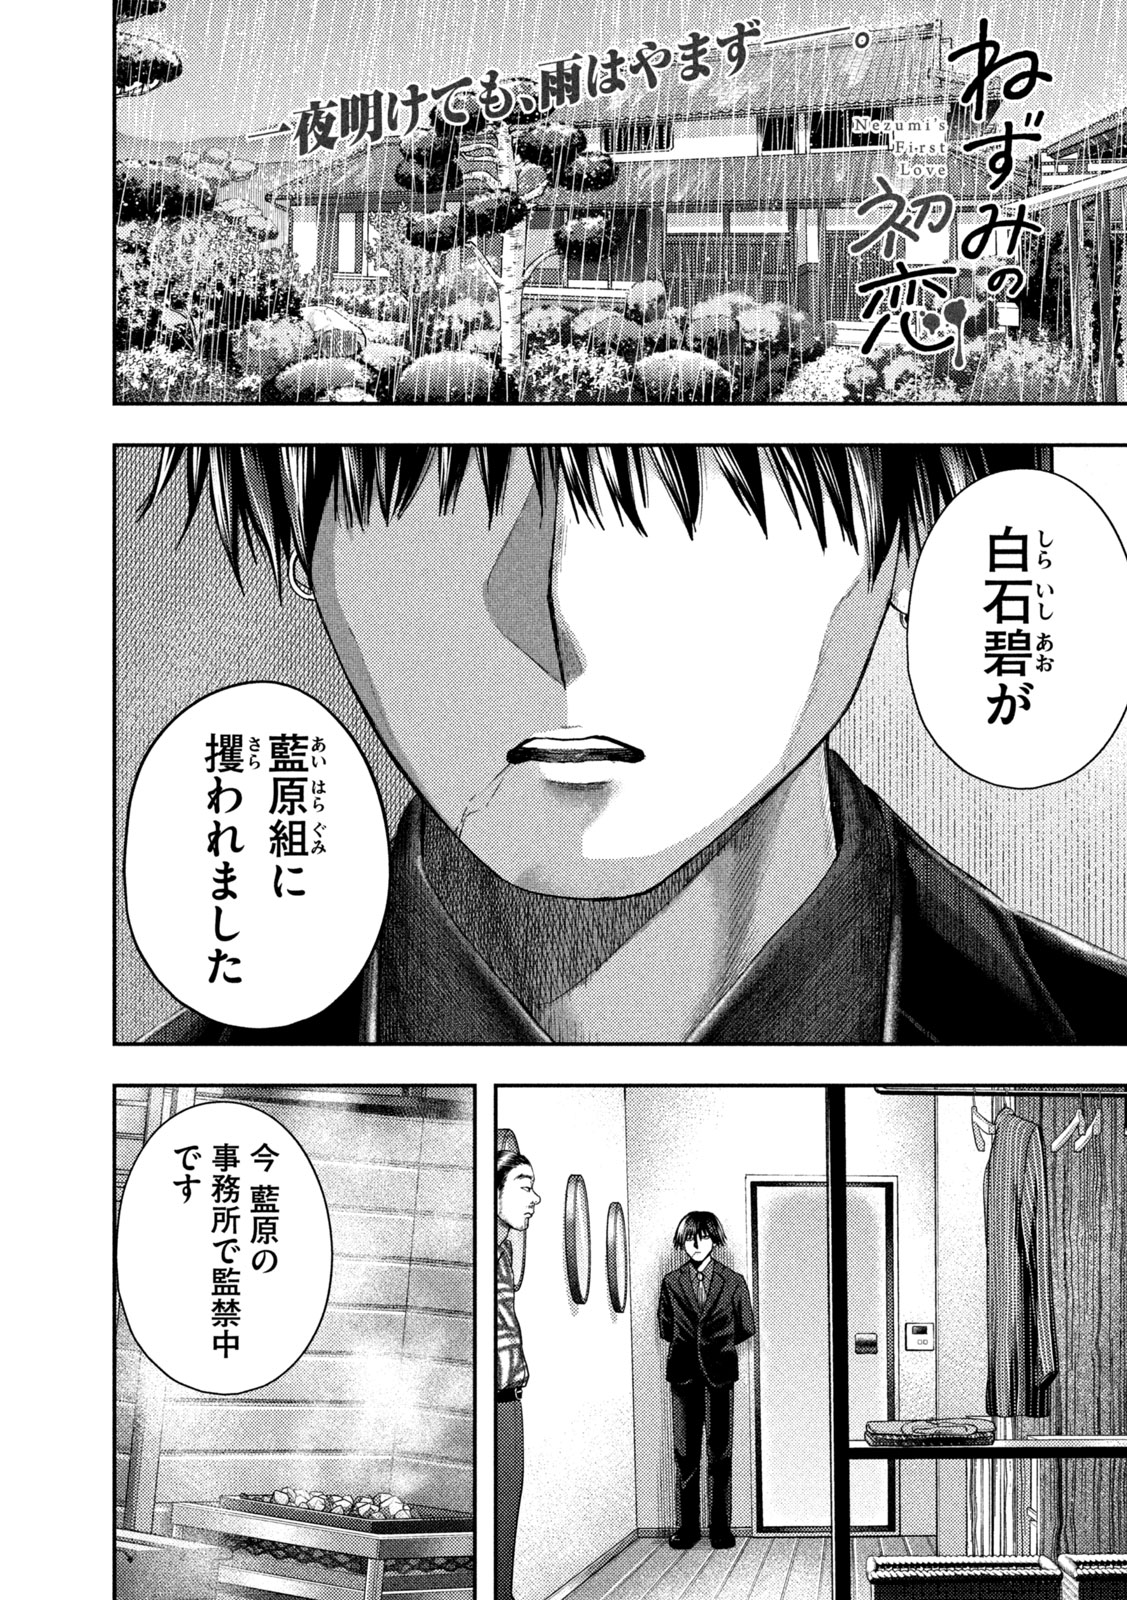 Nezumi no Koi - Chapter 16 - Page 1